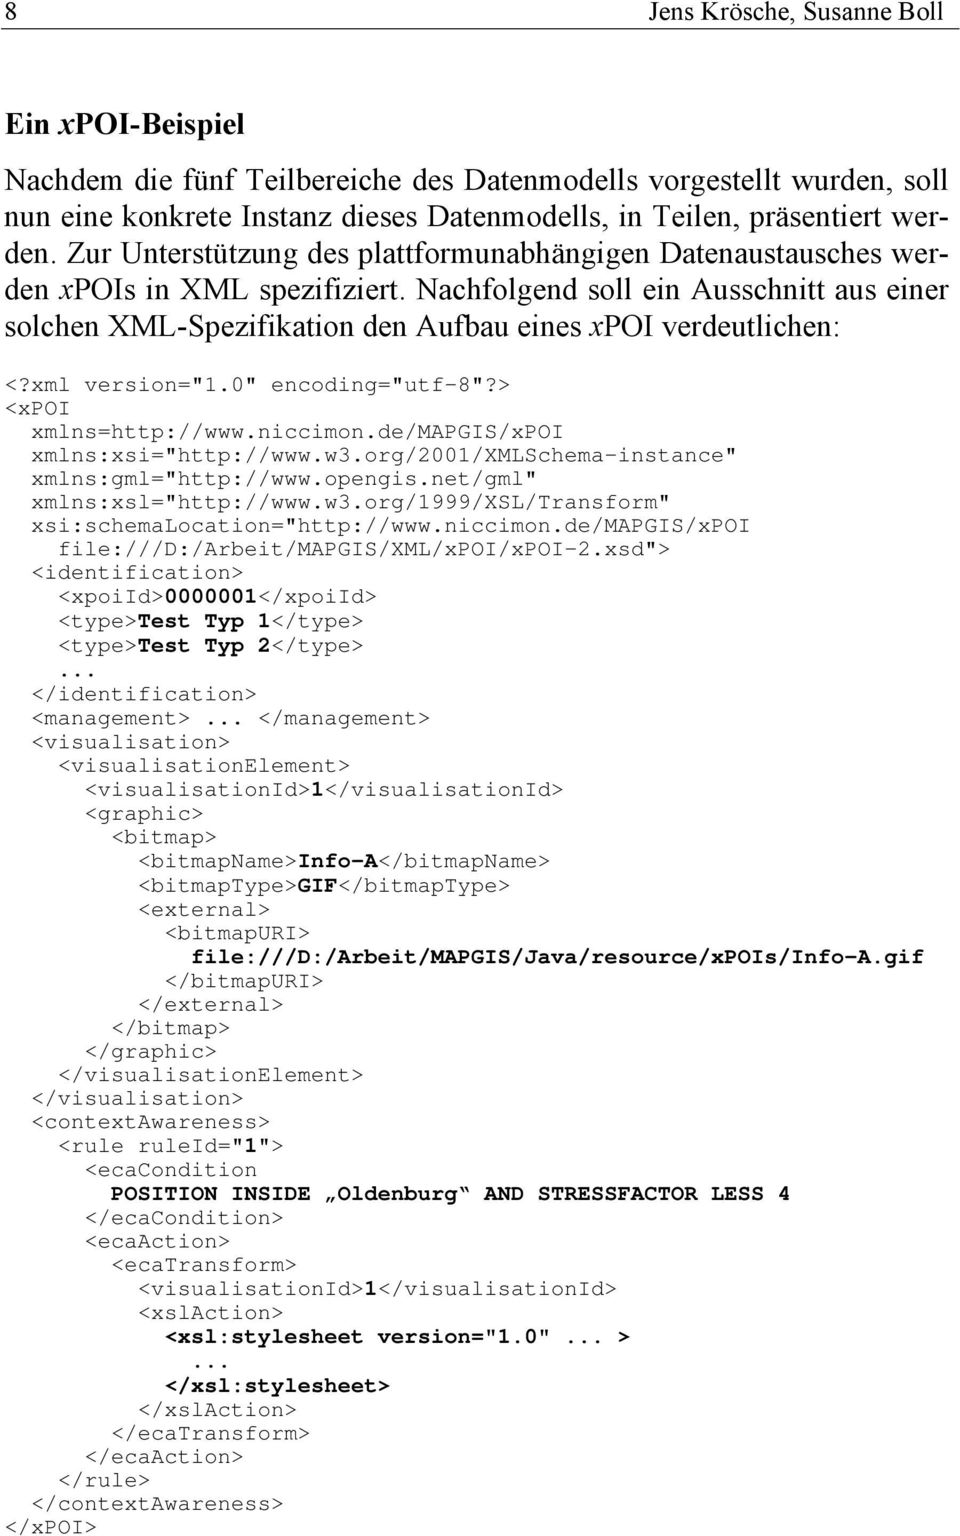 Nachfolgend soll ein Ausschnitt aus einer solchen XML-Spezifikation den Aufbau eines xpoi verdeutlichen: <?xml version="1.0" encoding="utf-8"?> <xpoi xmlns=http://www.niccimon.